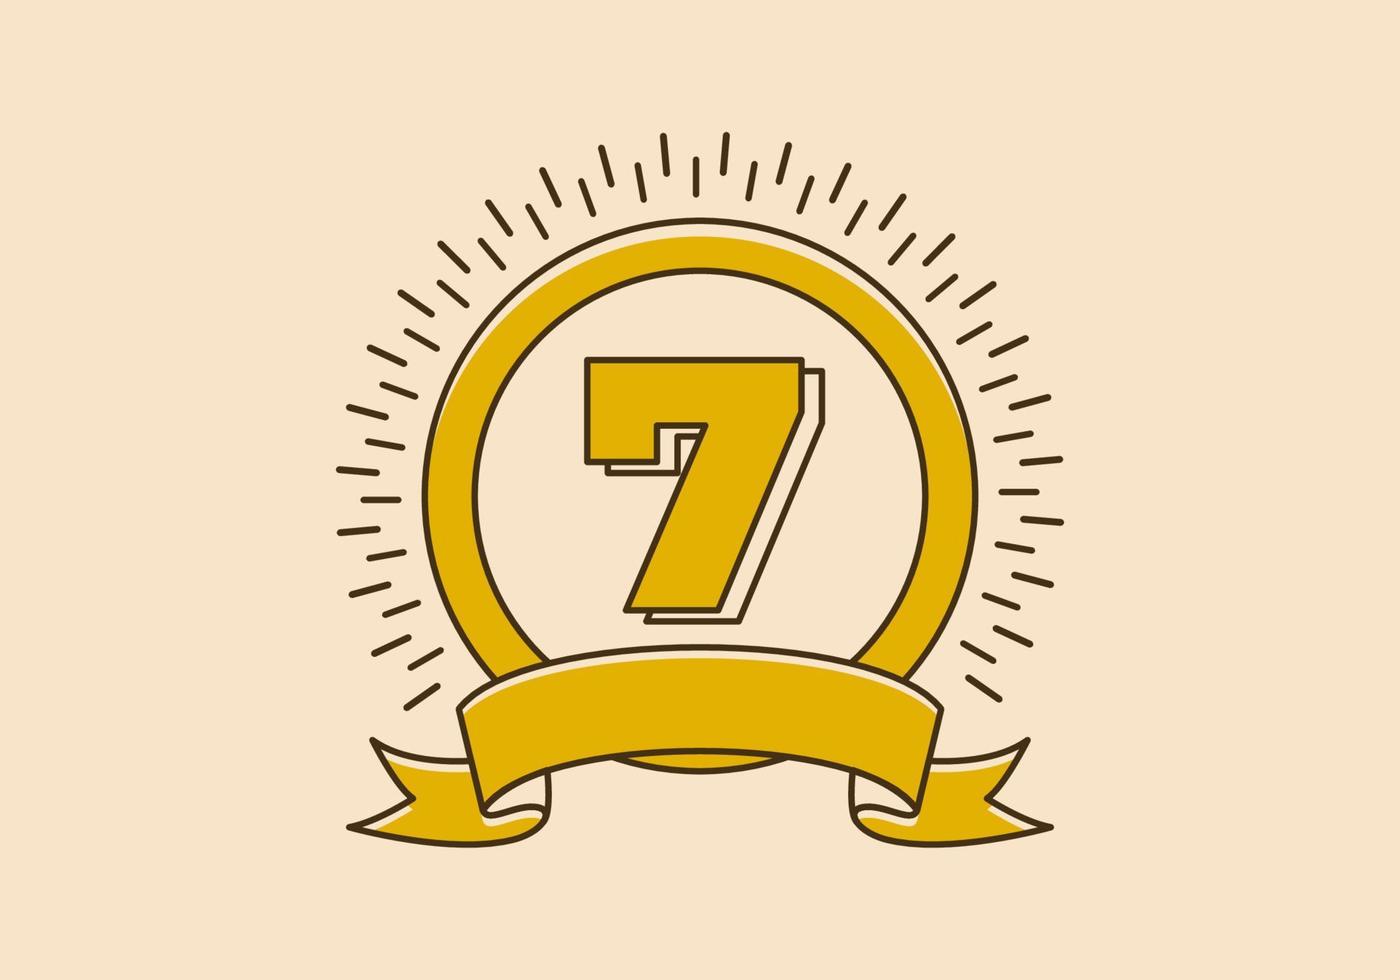 insignia de círculo amarillo vintage con el número 7 en él vector